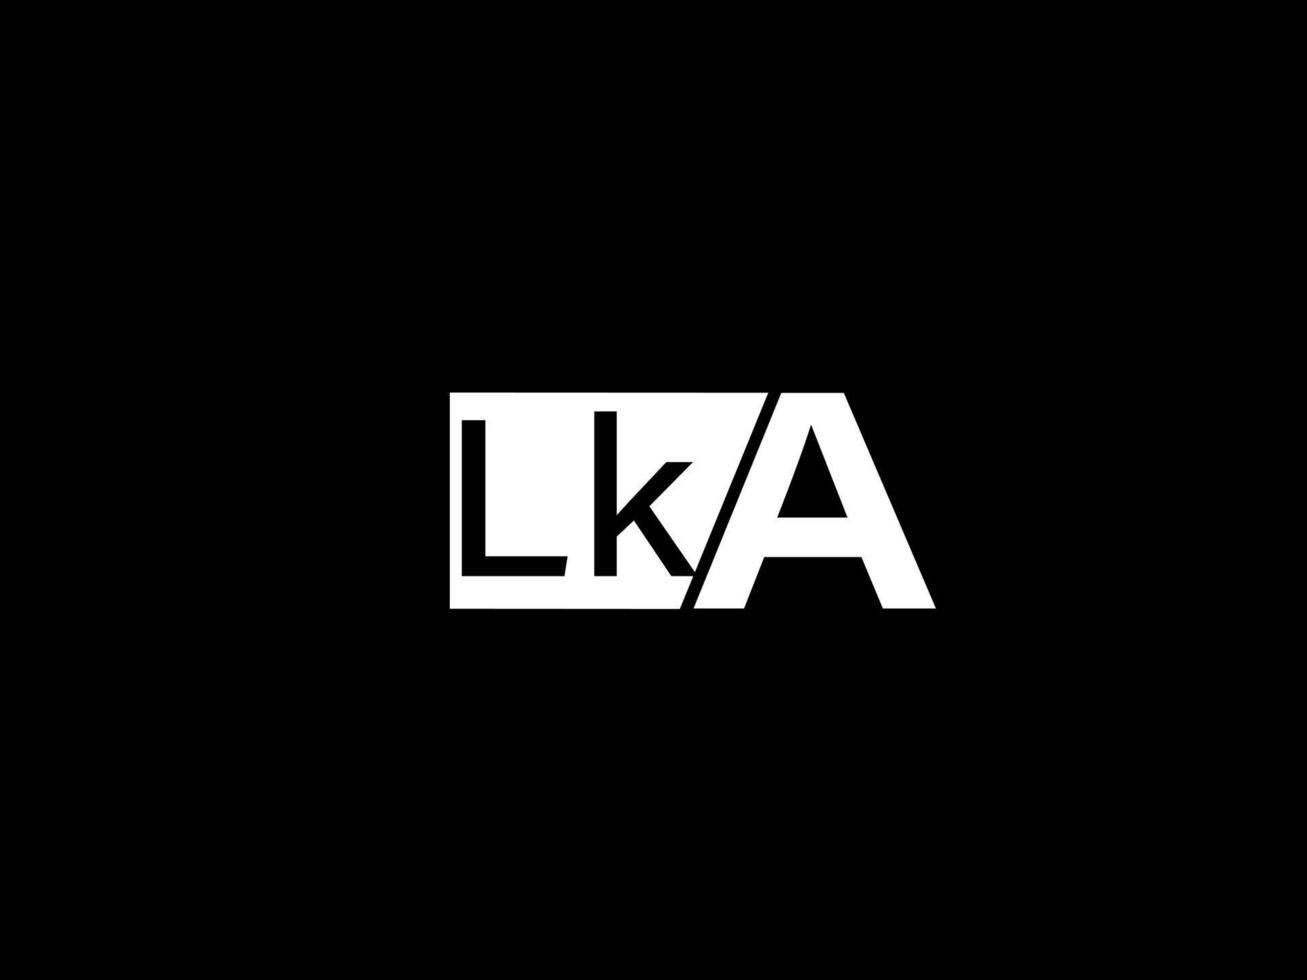 logo lka et art vectoriel de conception graphique, icônes isolées sur fond noir